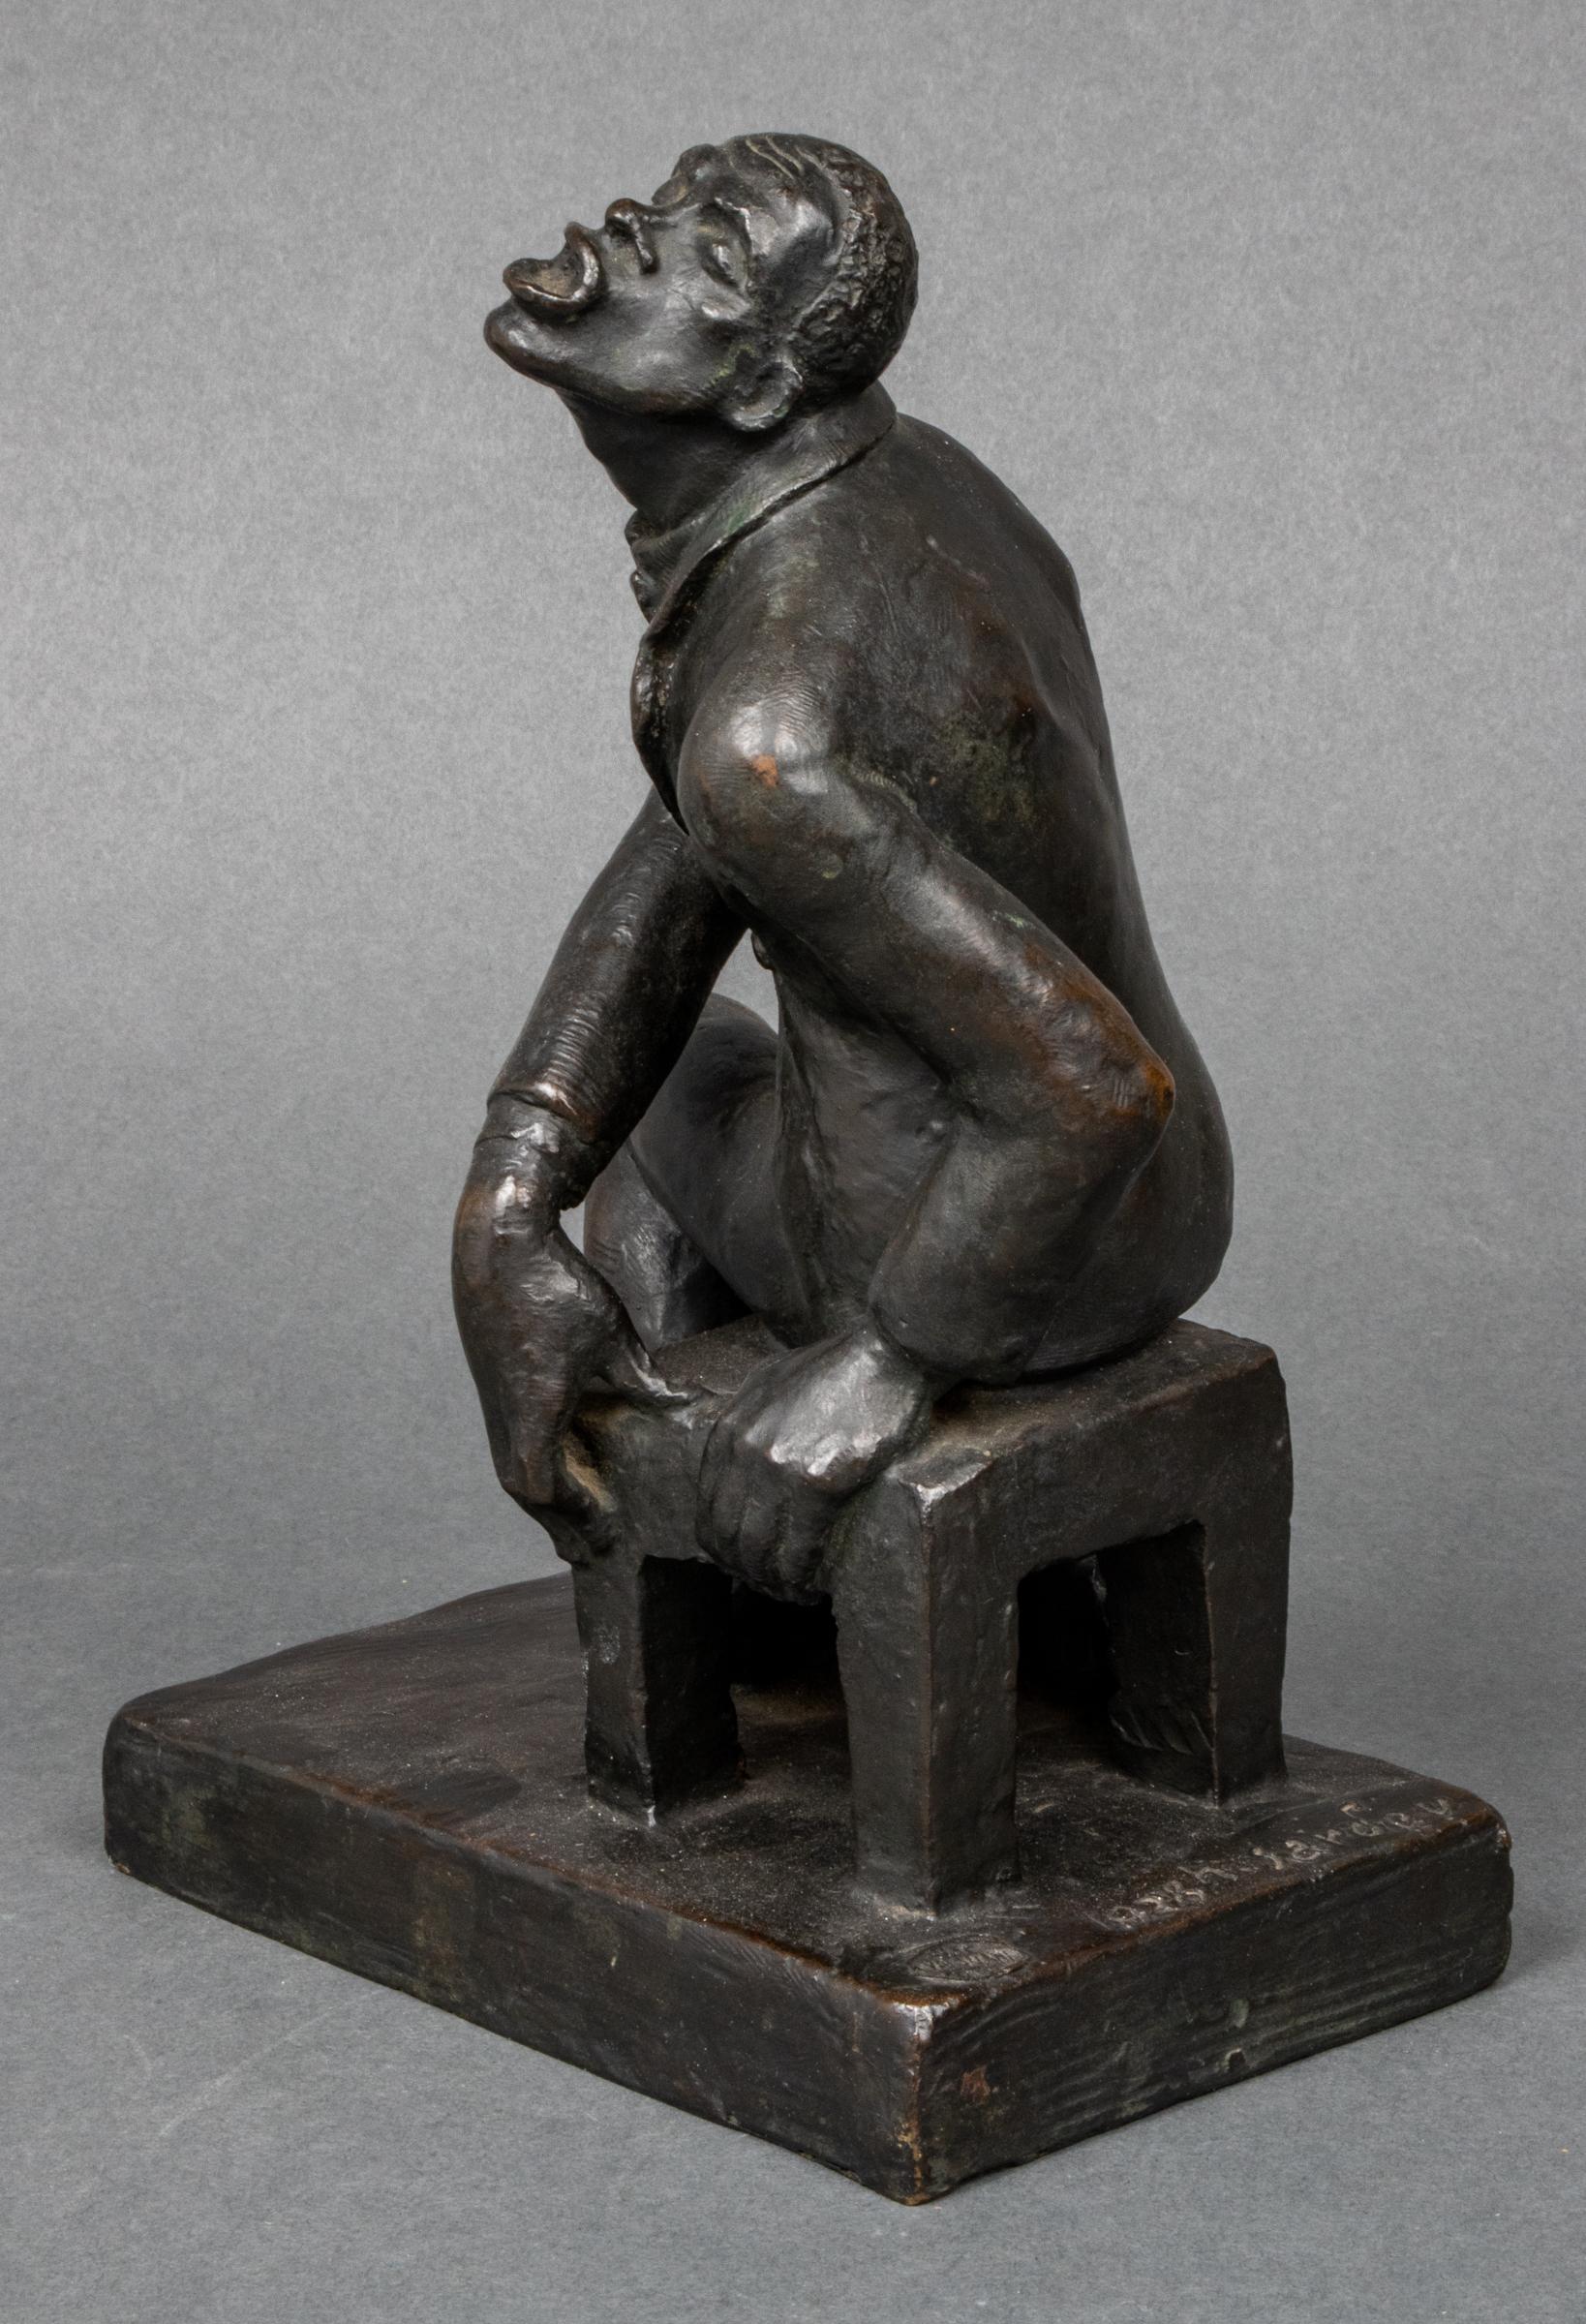 Helene Sardeau (belgo-américaine, 1899-1968) Sculpture en bronze coulé de style Art déco représentant une chanteuse de jazz, signée et datée de 1928 avec la marque de la fonderie Valsuani à Paris.
Un moulage de cette sculpture a été exposé au Salon